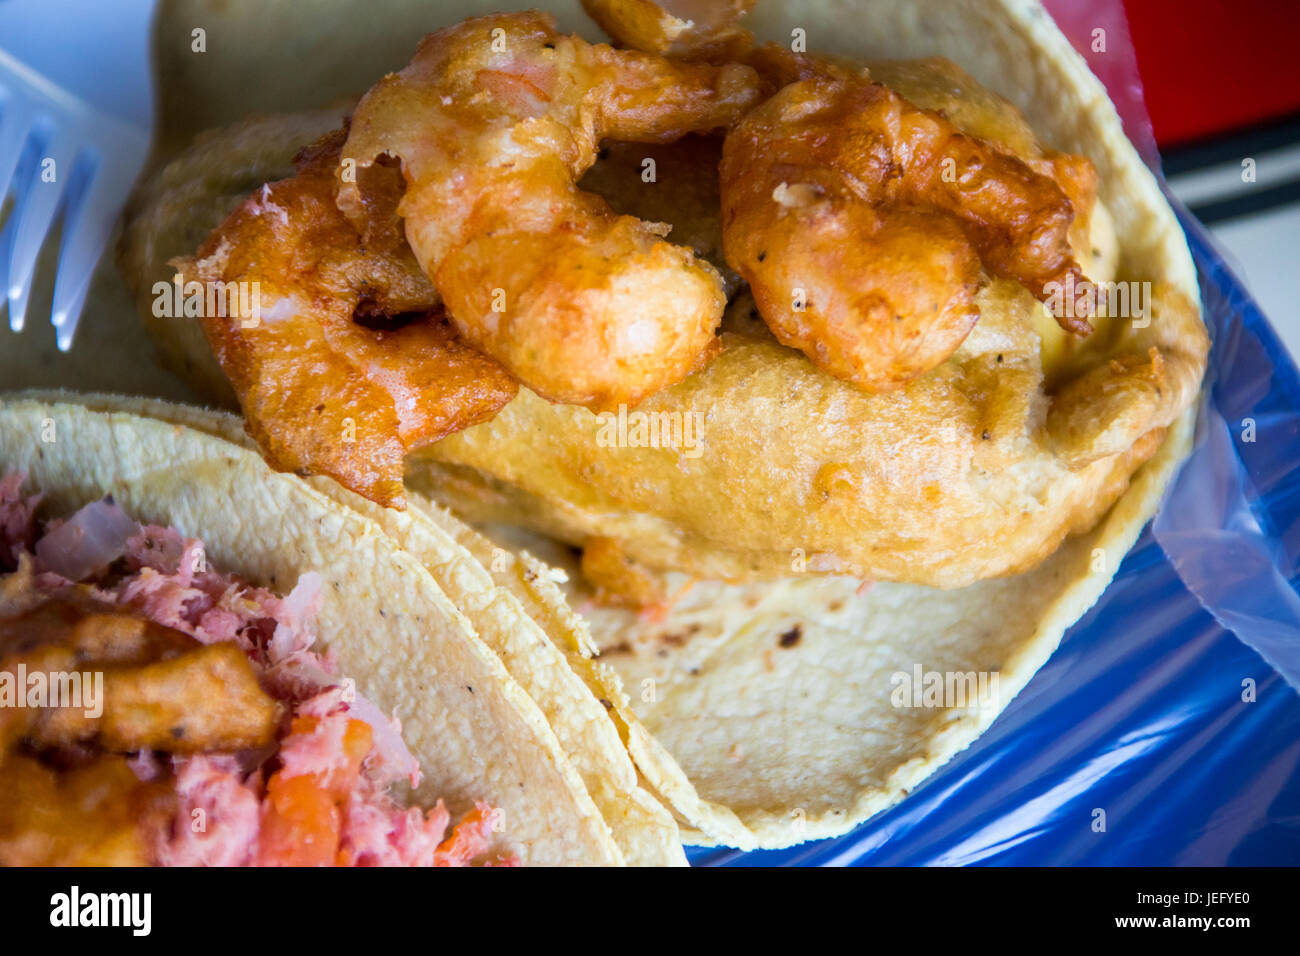 Taco de chile relleno de camaron at El Pescadito Restaurant, Mexico City, Mexico Stock Photo